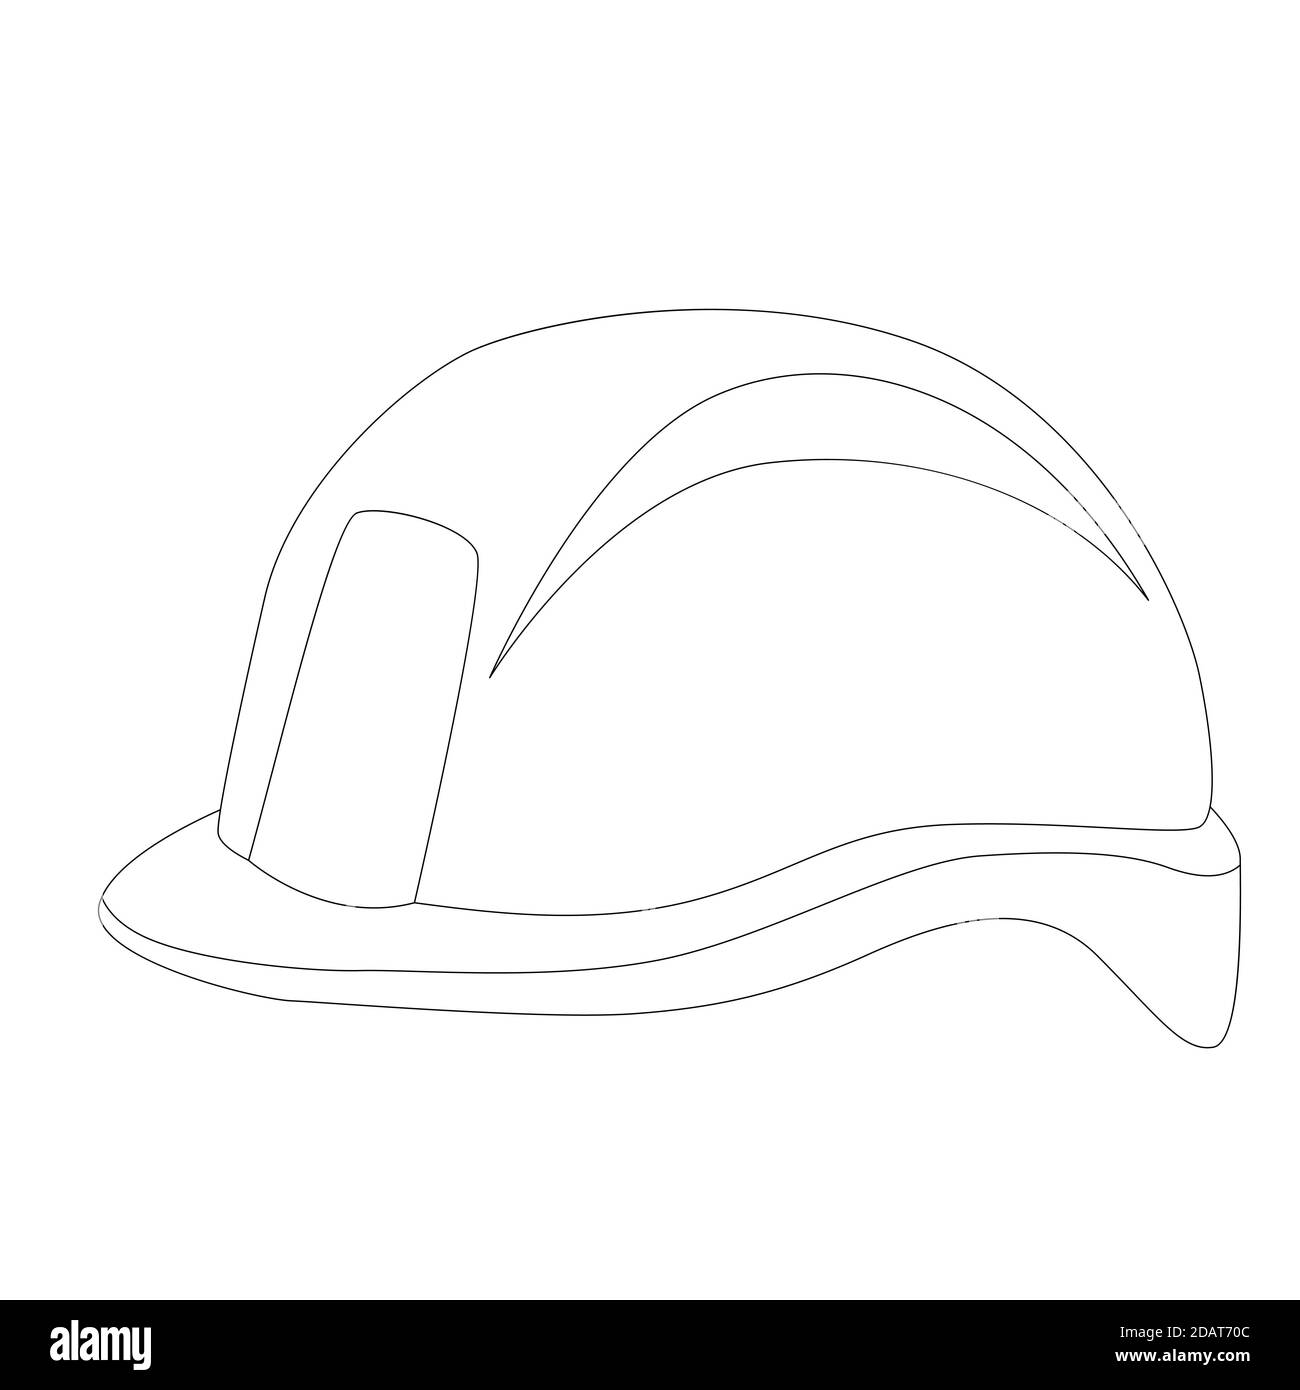 casco protector, ilustración vectorial, dibujo de forro, lado de perfil  Fotografía de stock - Alamy